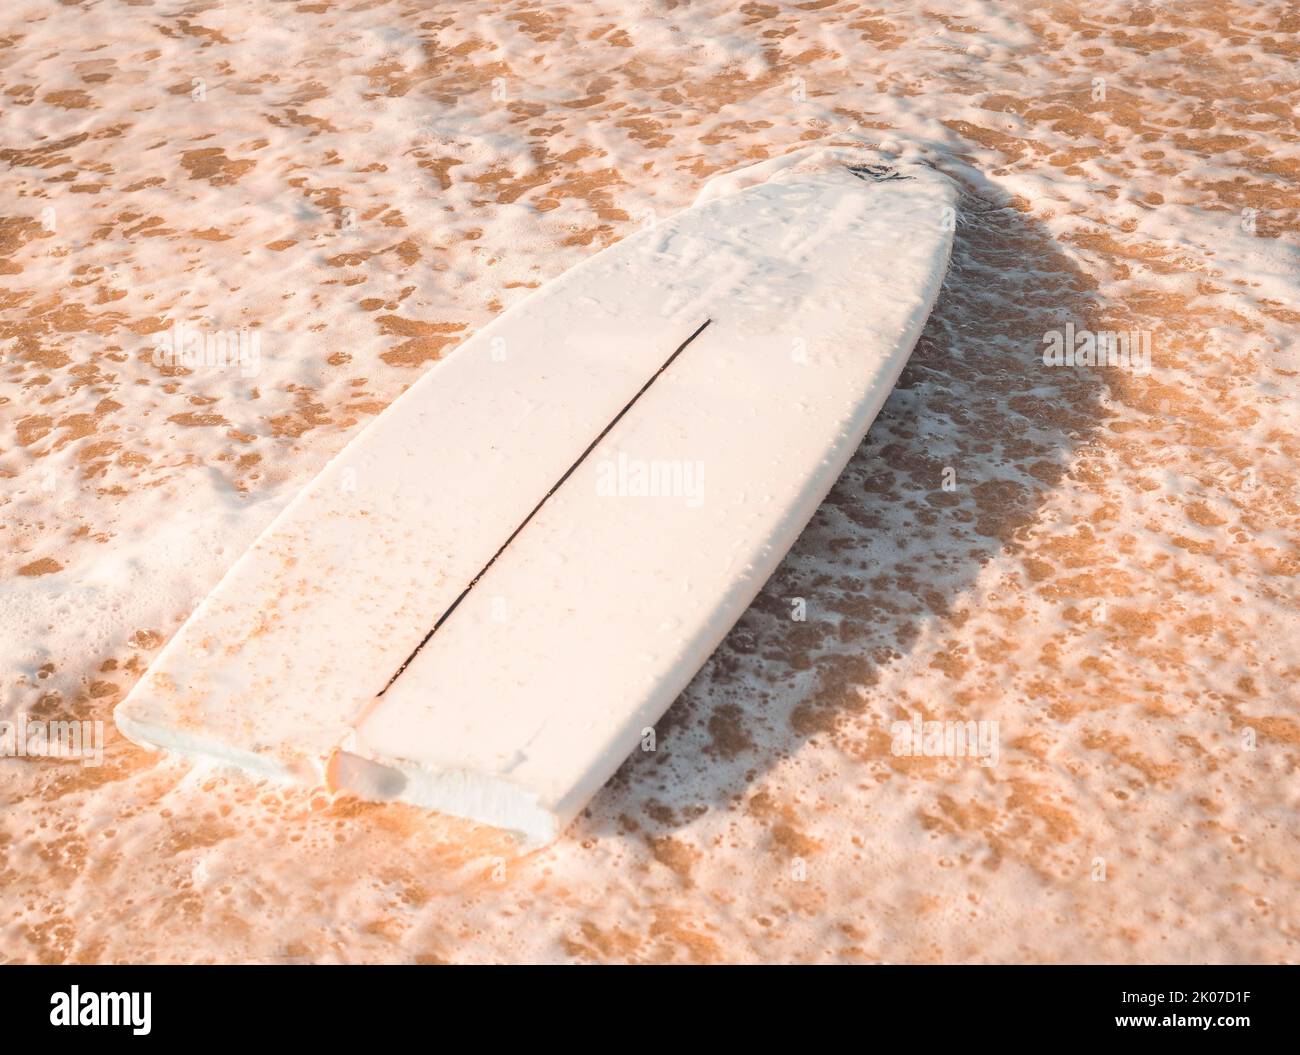 Une planche de surf cassée sur le sable à la plage. Concept de surf Banque D'Images